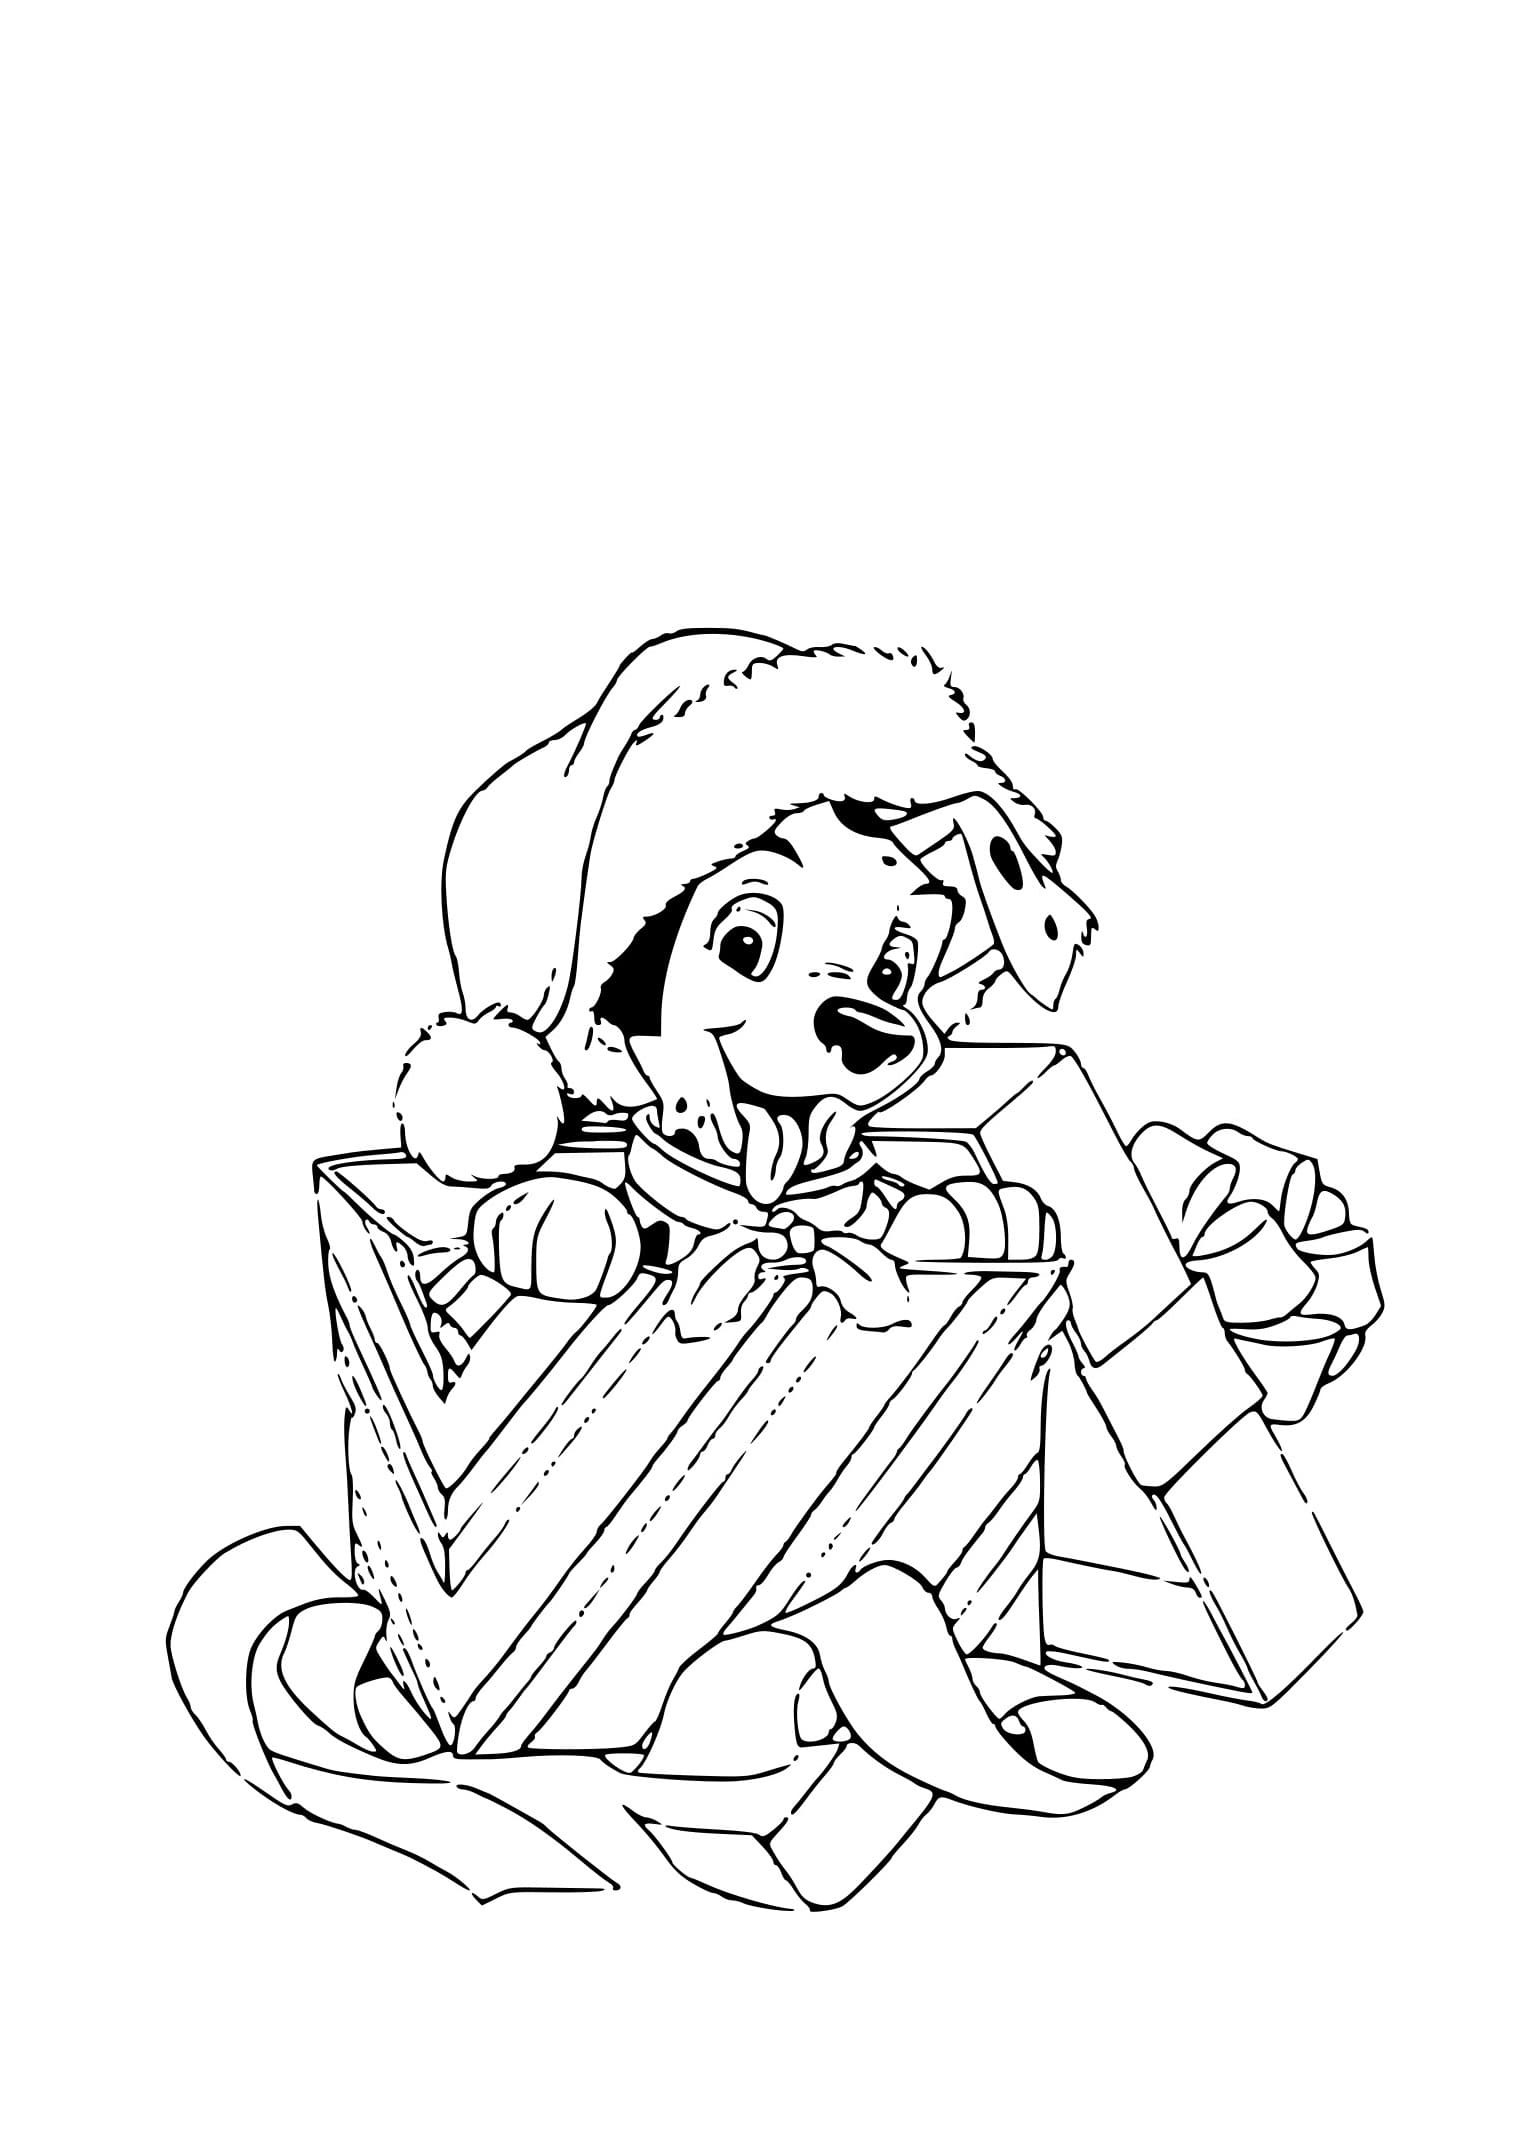 Dibujos de Perro de Navidad para colorear - 60 imágenes para imprimir